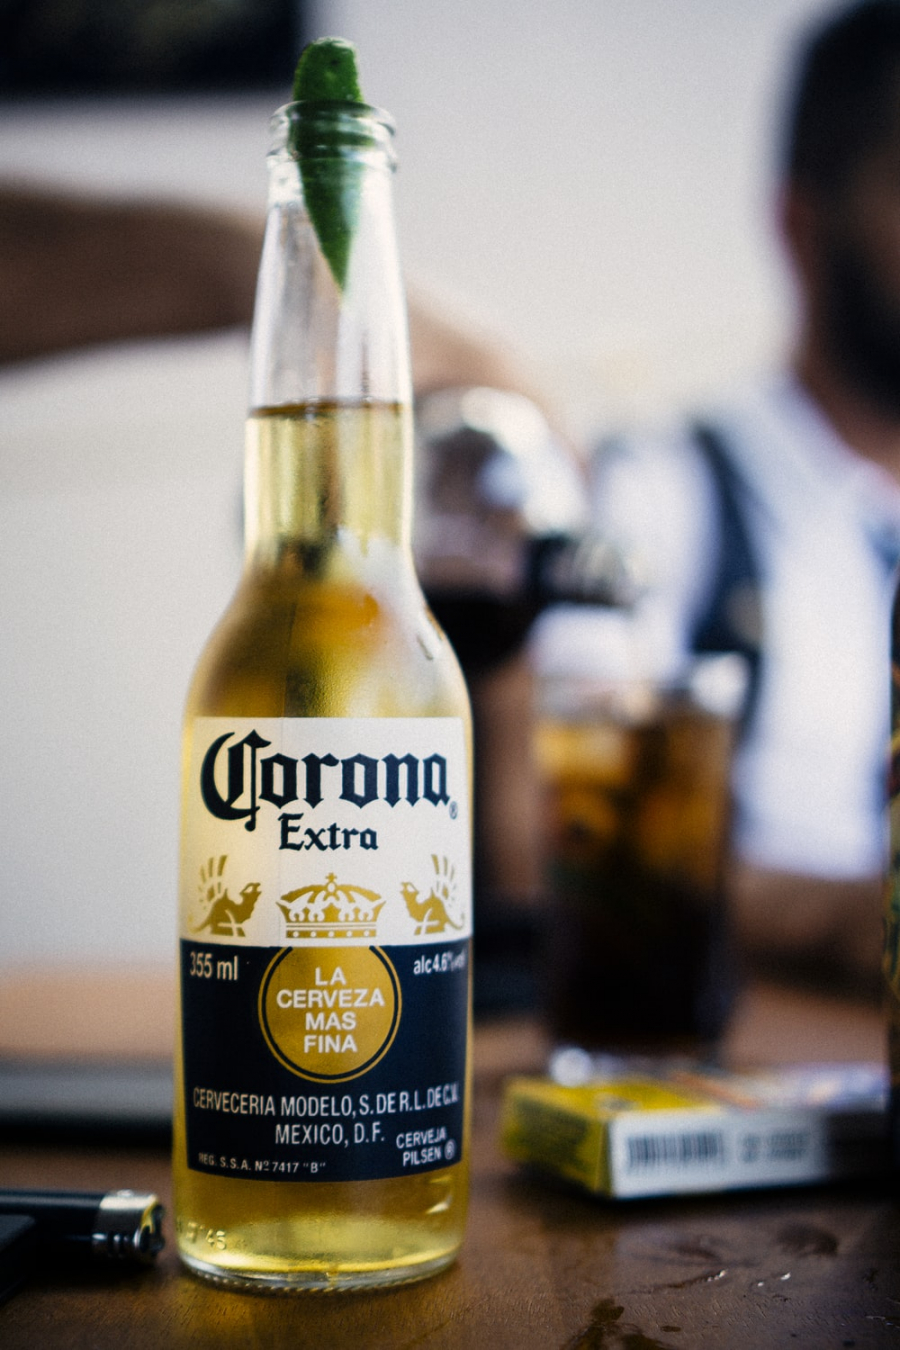 Corona Extra là thương hiệu bia mang đặc trưng văn hóa của Mexico với hương vị nhẹ nhàng, được dùng cùng chanh và muối.